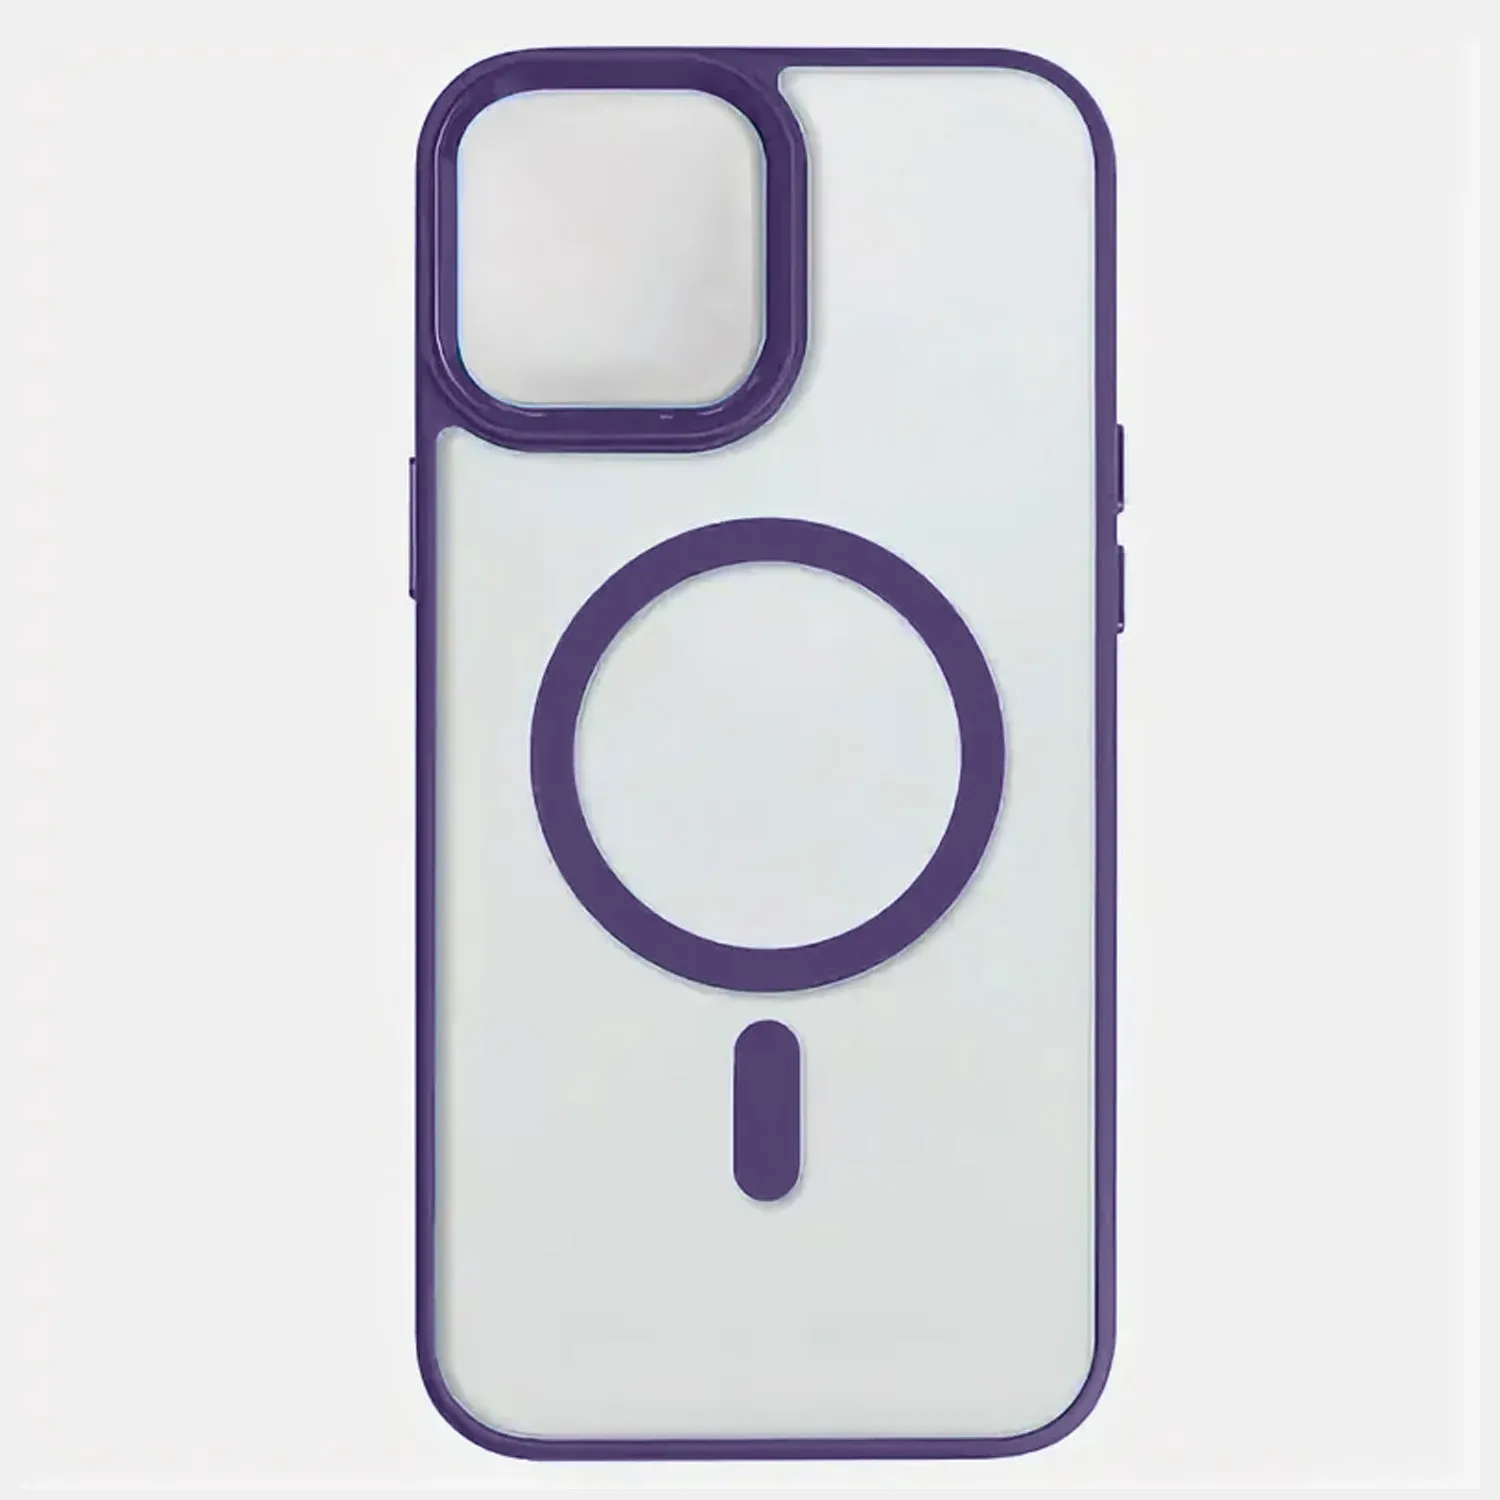 Чехол прозрачный для Apple iPhone 14, iPhone 13 с MagSafe (фиолетовый)